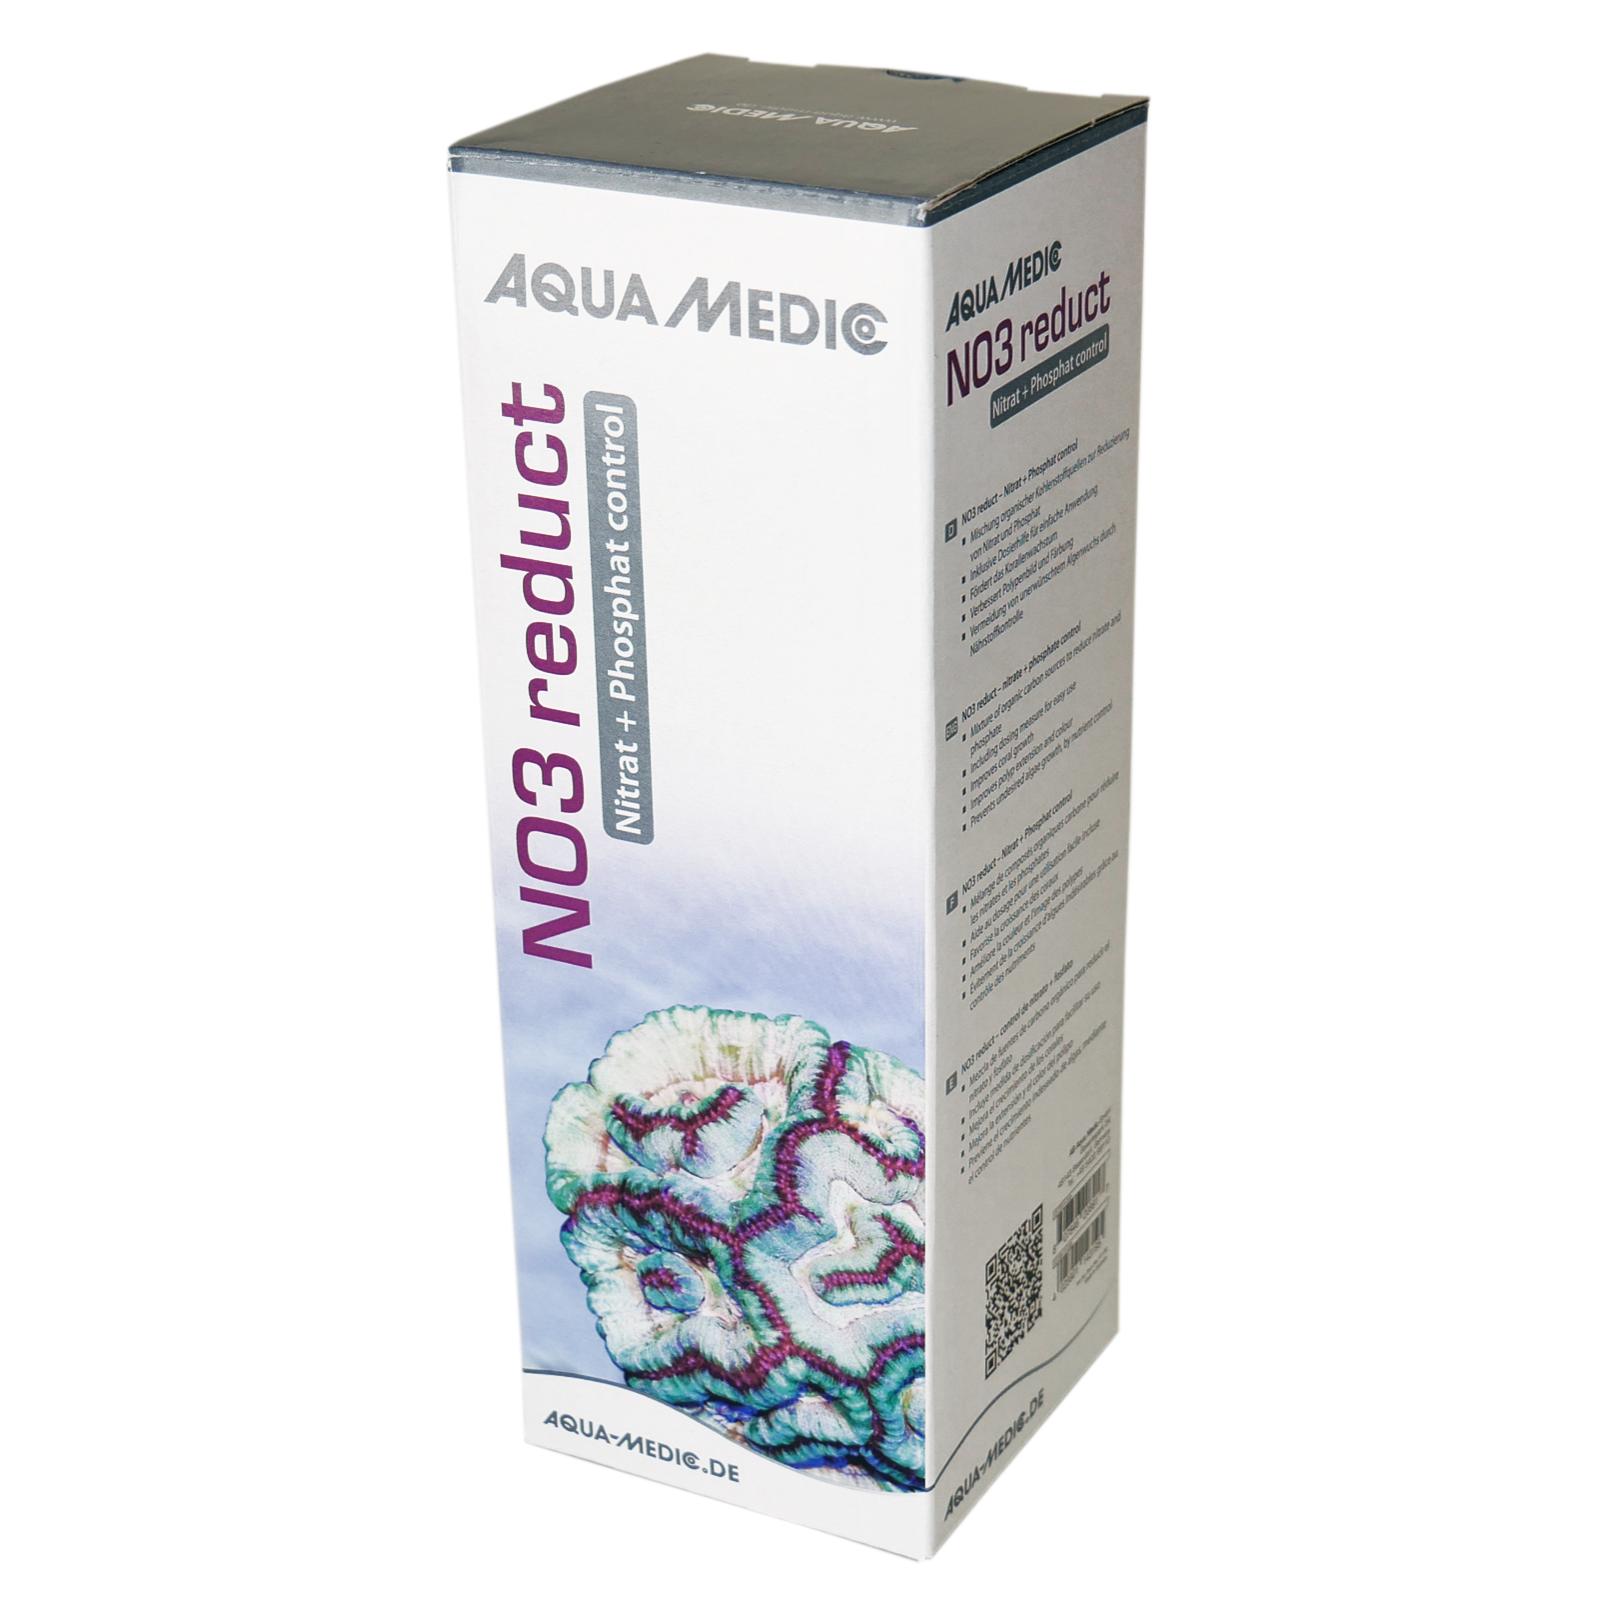 Aqua Medic no3 reduct